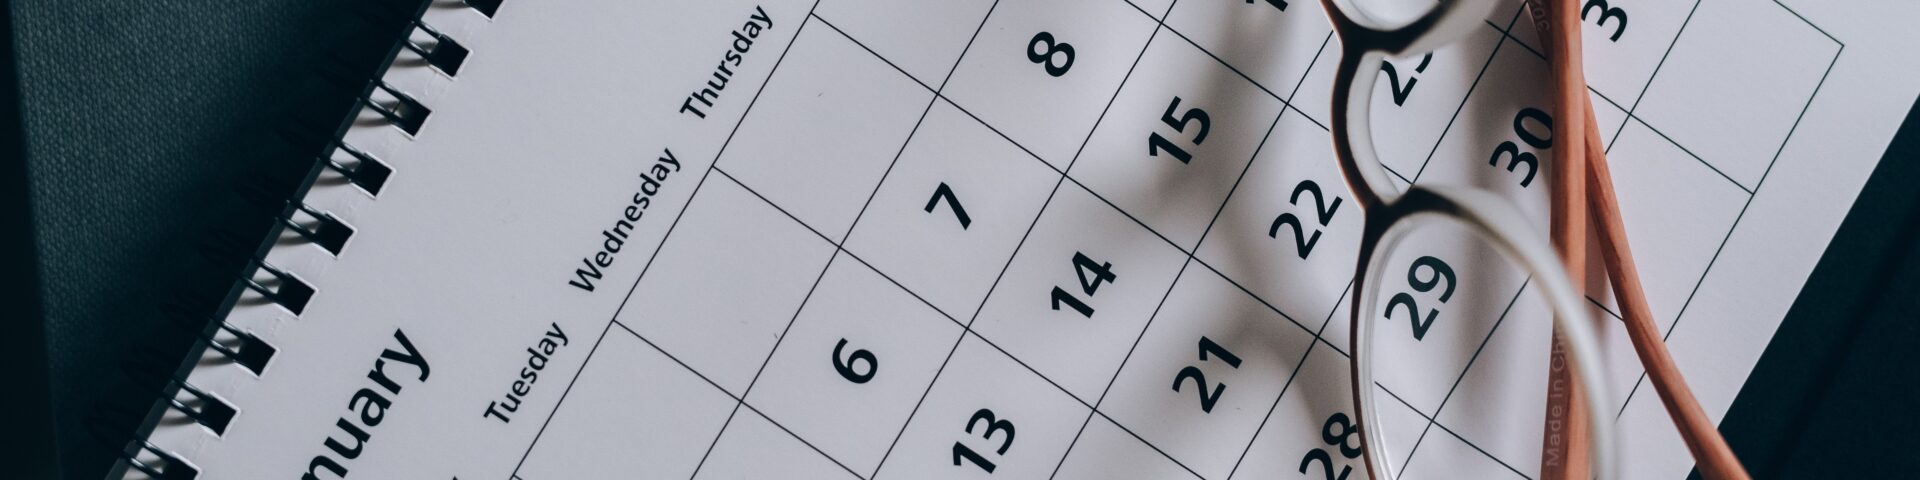 kalender van januari, als afbeelding bij een blog over waarom is pensioenleeftijd 68 jaar